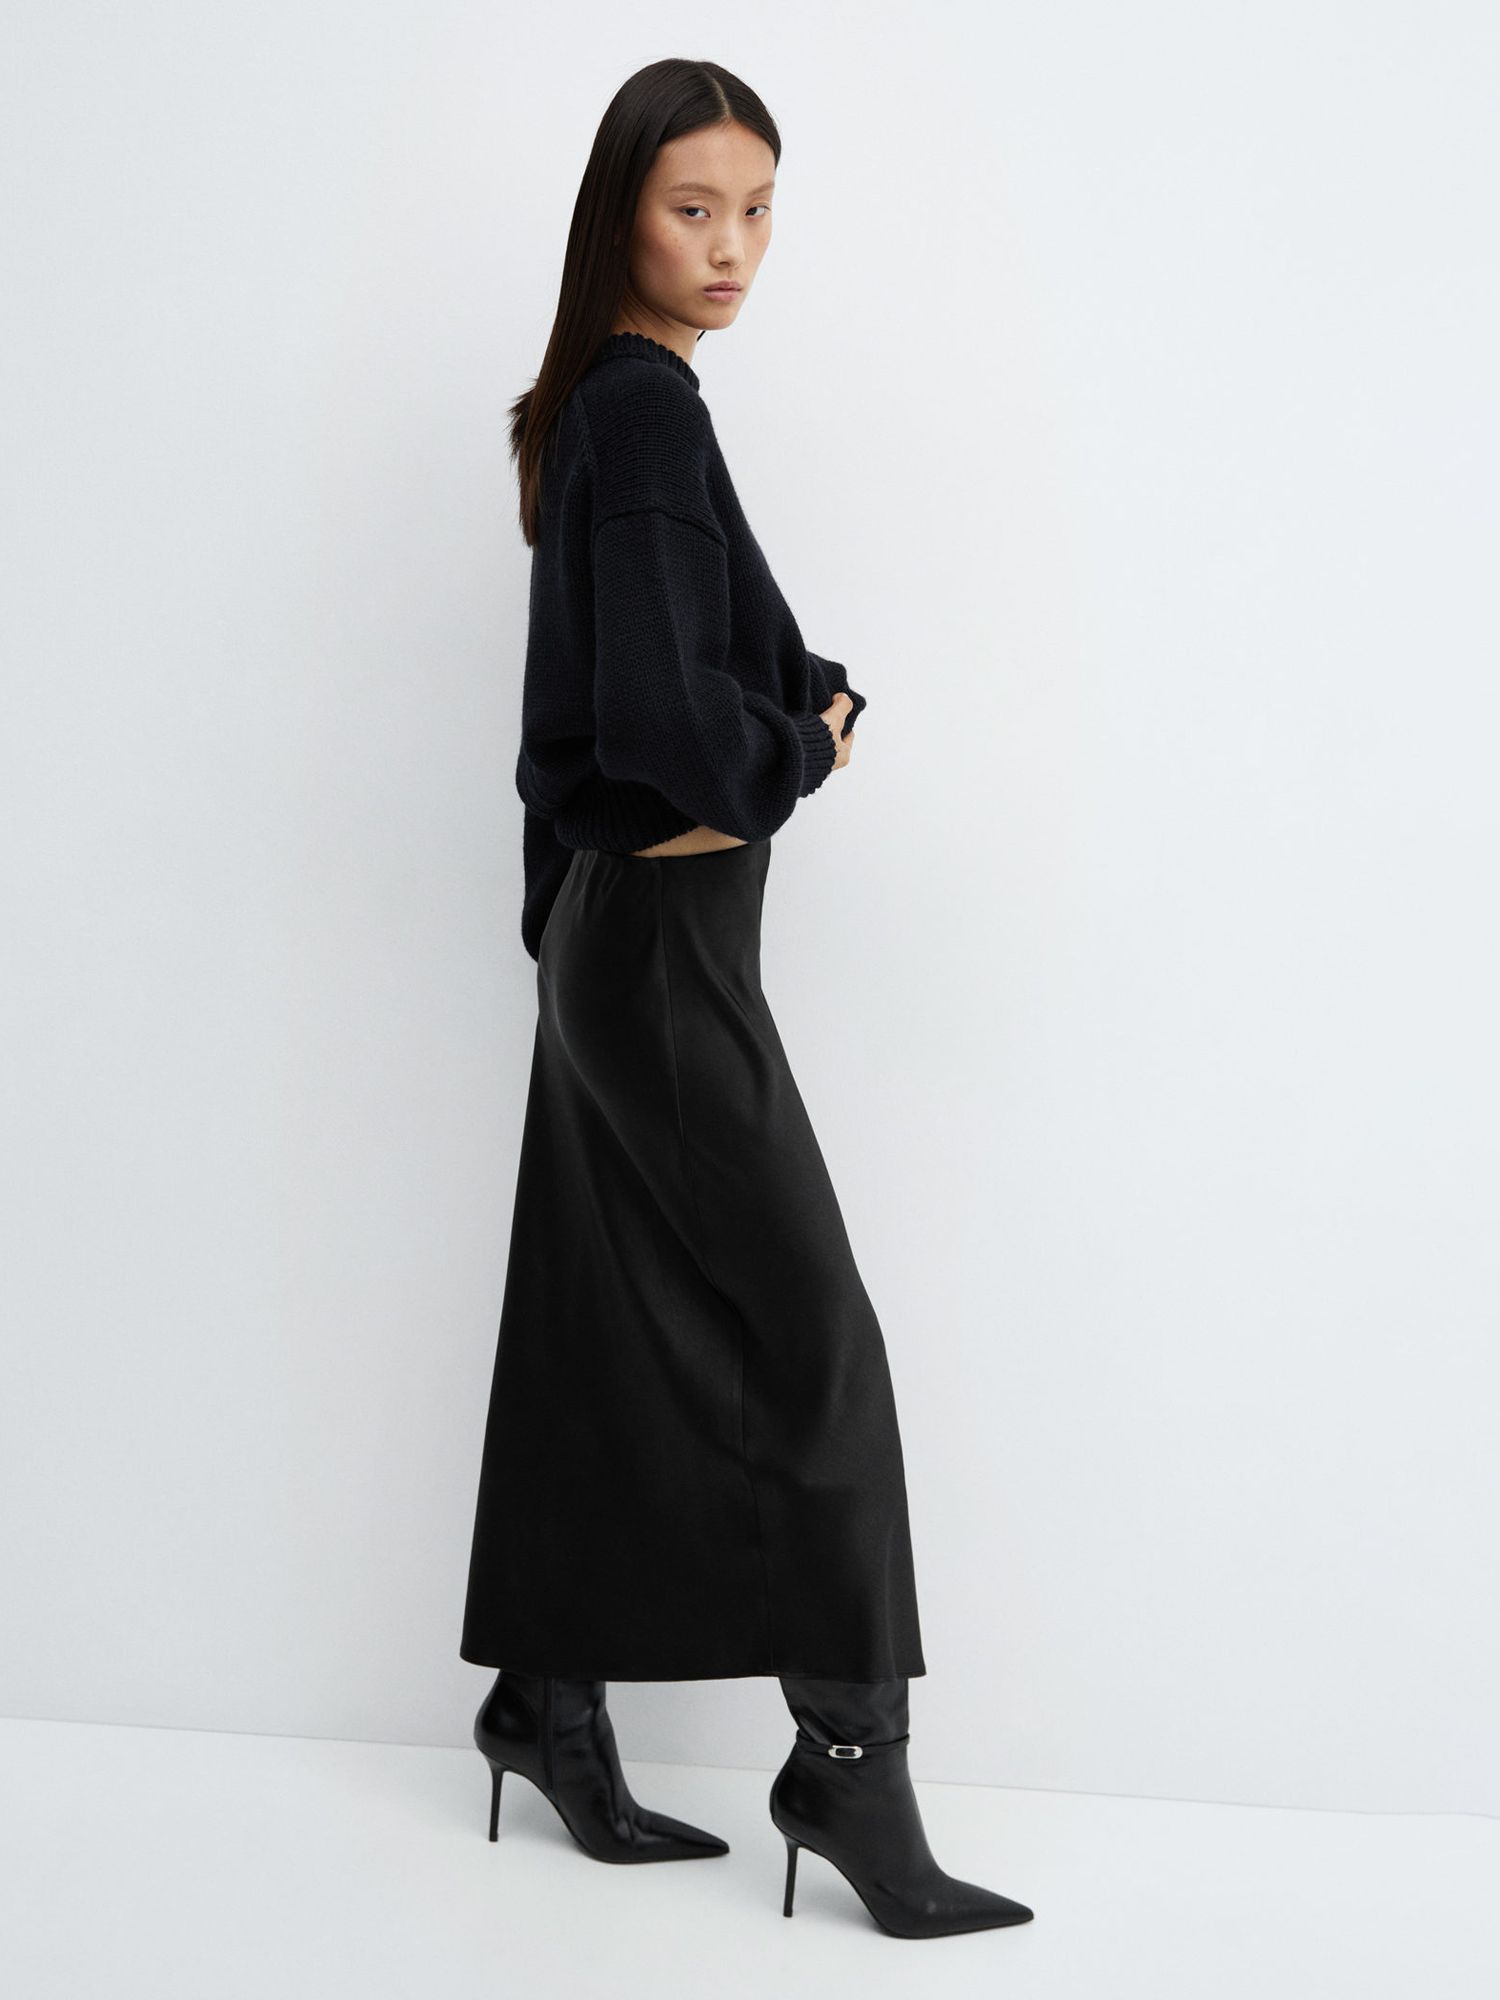 Mango Mia Satin Slip Midi Skirt, Black, XS